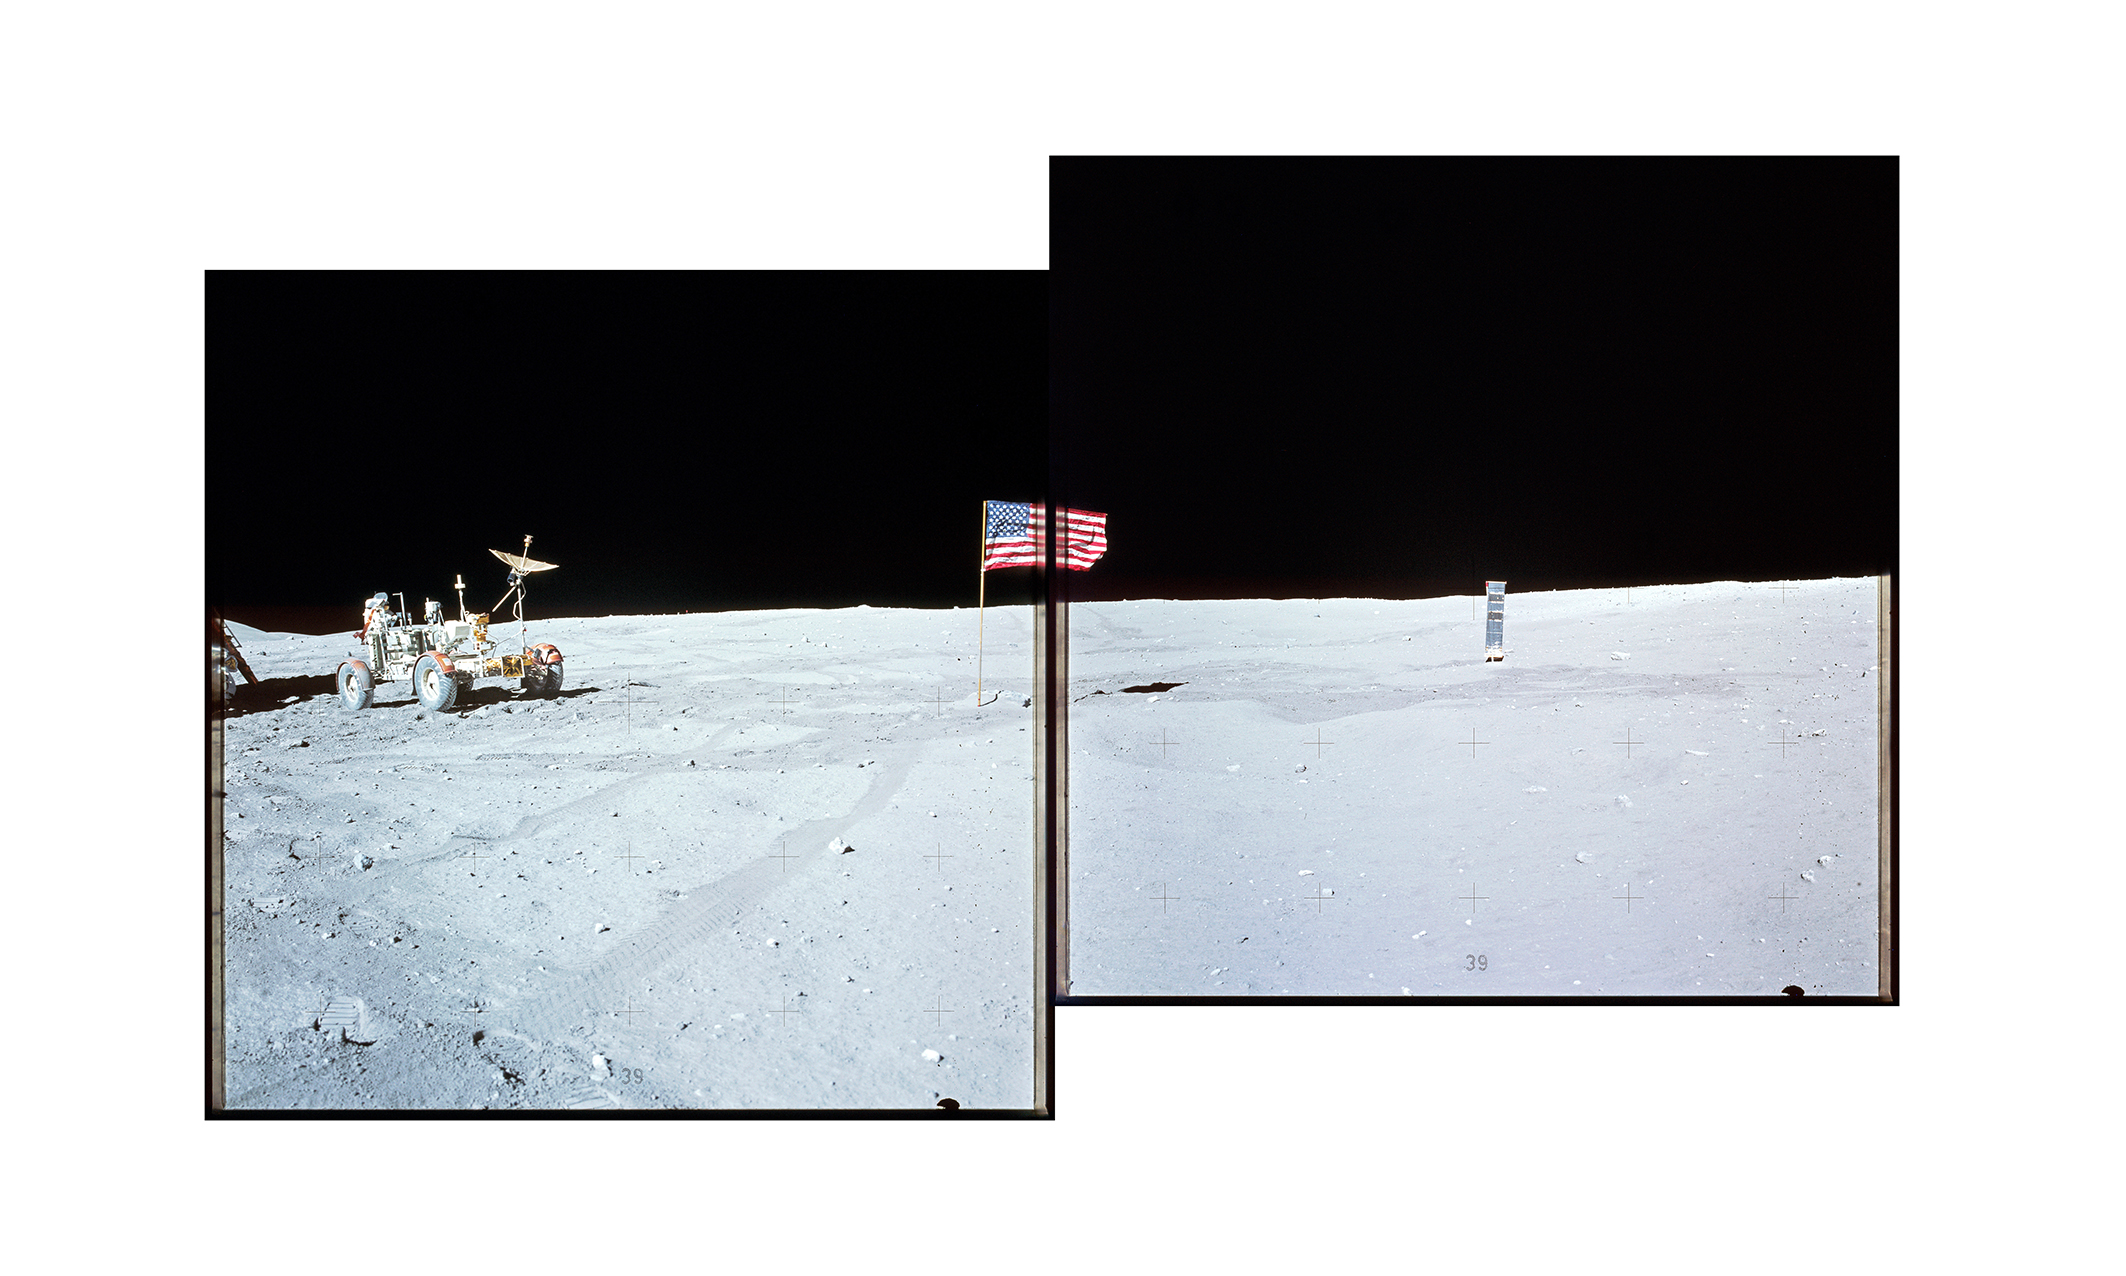 Lune, rover et drapeau américain photographiés lors d'une mission Apollo